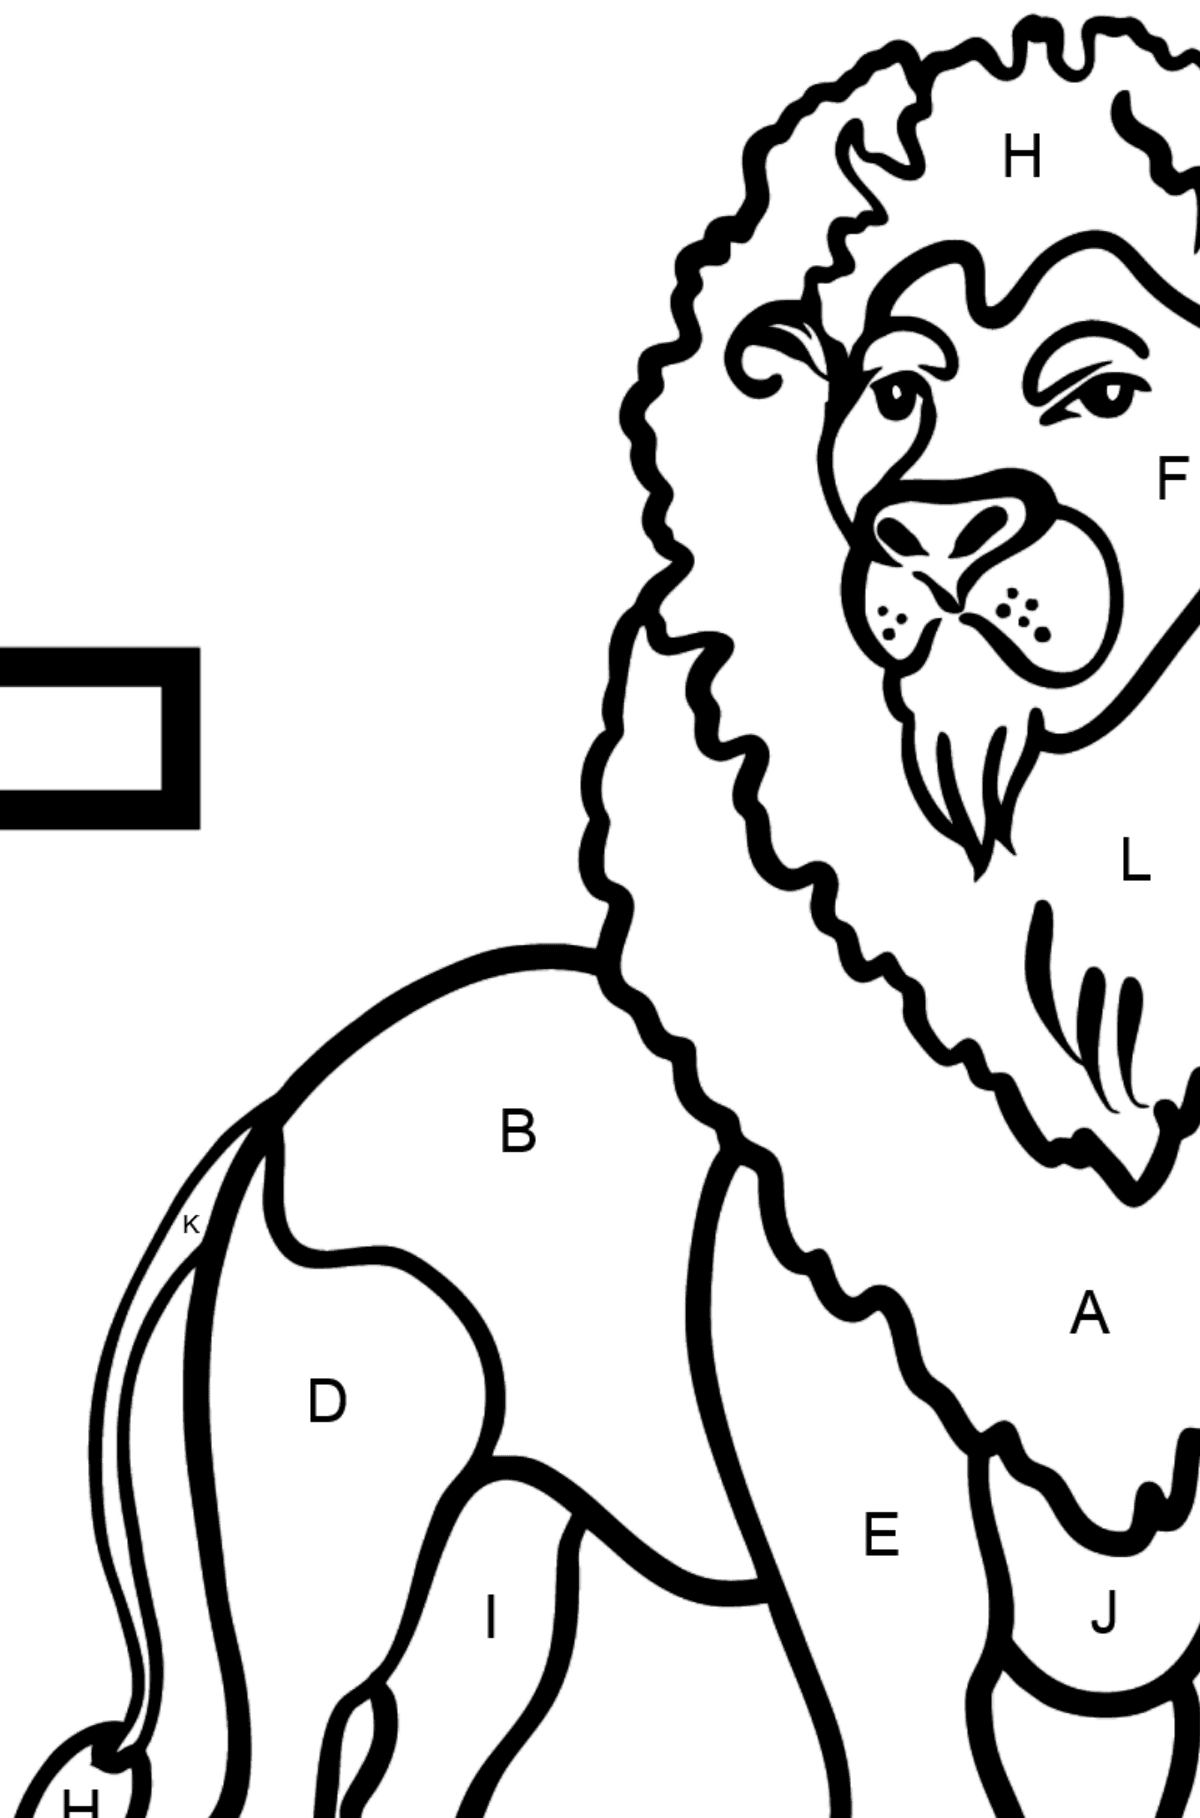 Dibujo de Letra L inglesa para colorear - LION - Colorear por Letras para Niños